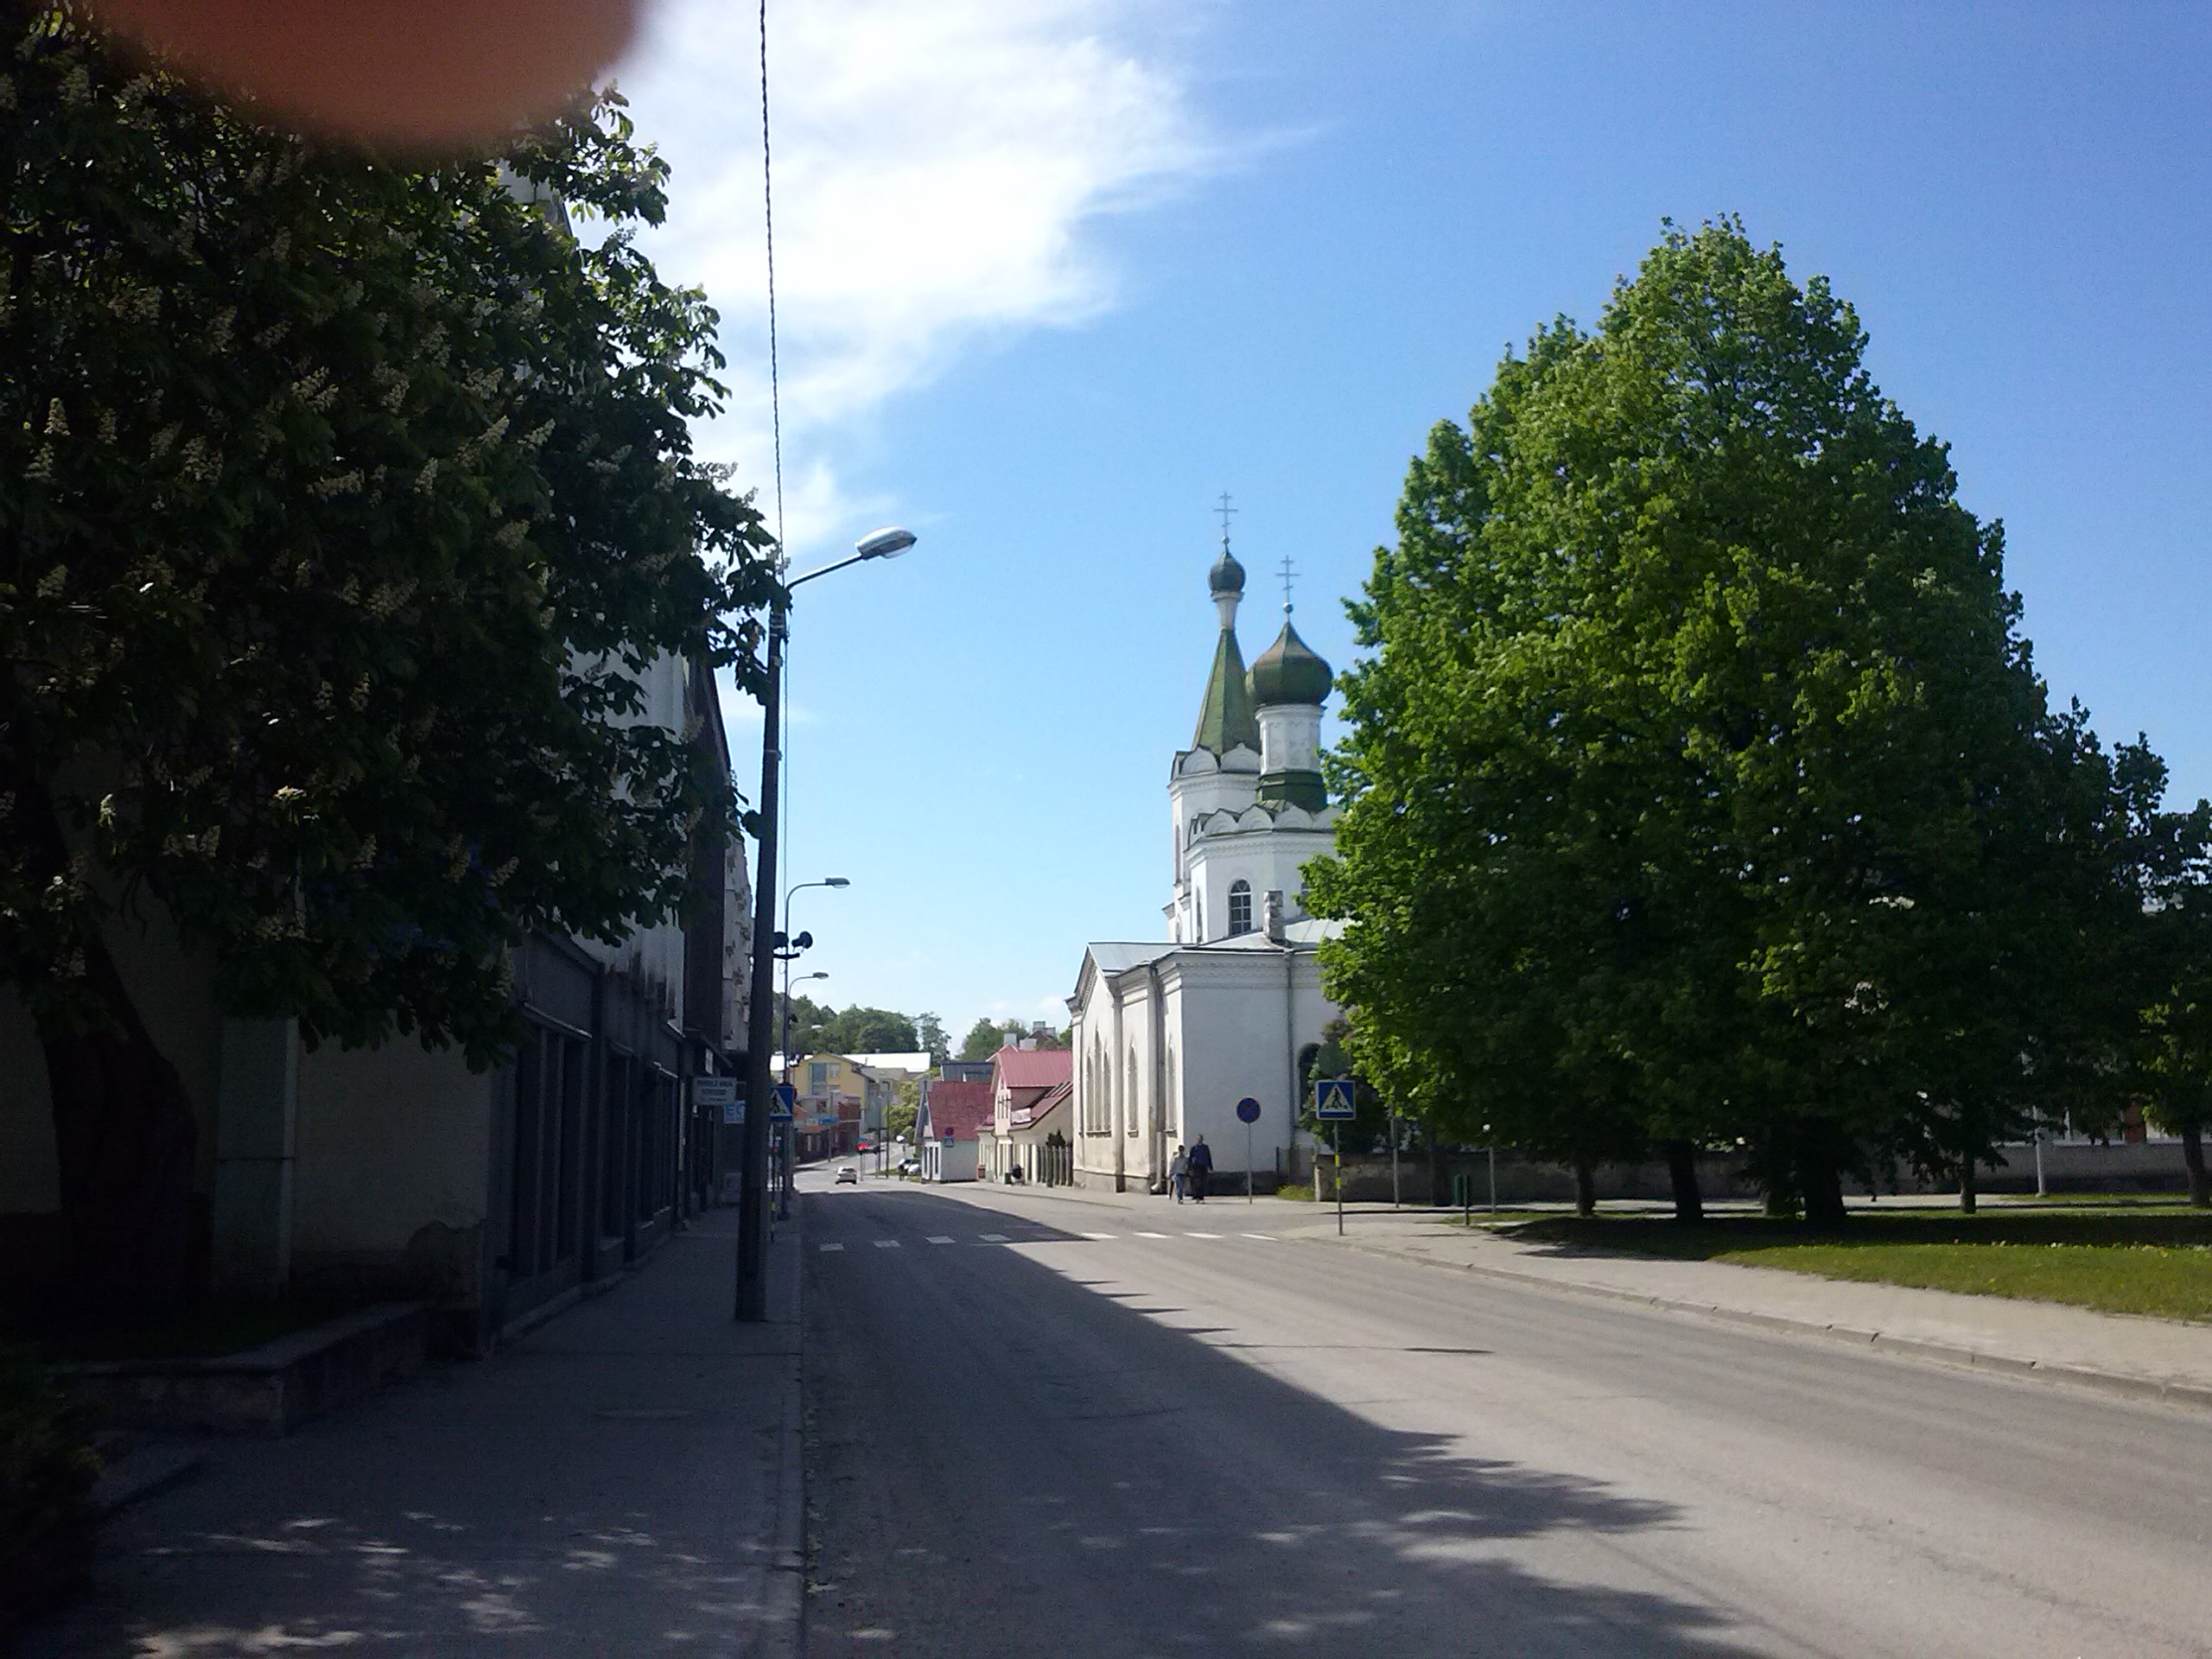 Peterburgi (Tallinna) tänav ap.-õigeusu kirikuga rephoto